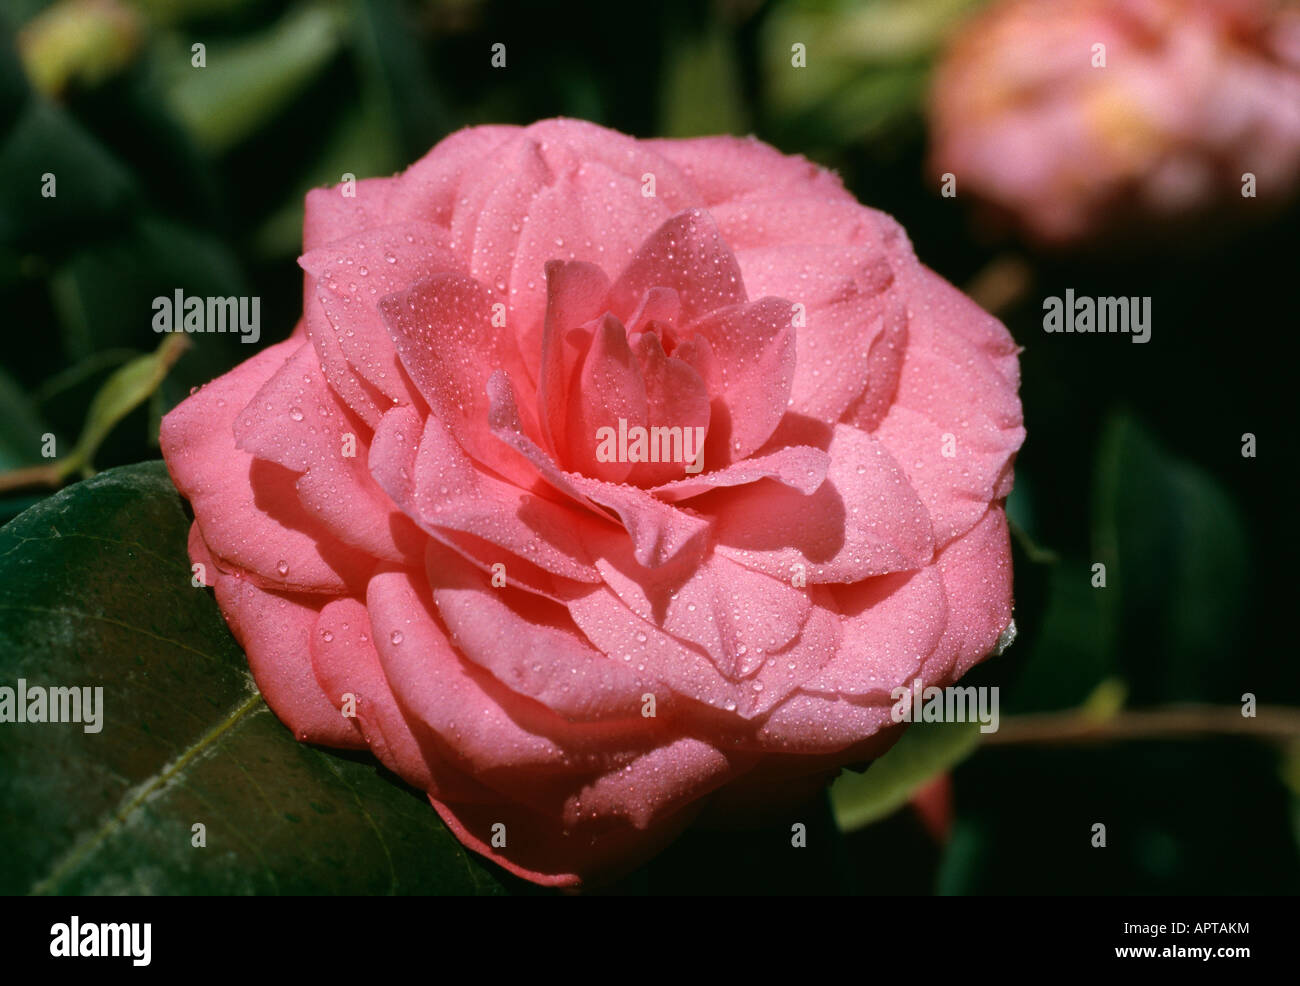 Rose camélia sophistiquée avec des gouttes de rosée ajoutée élégante parfaite Banque D'Images